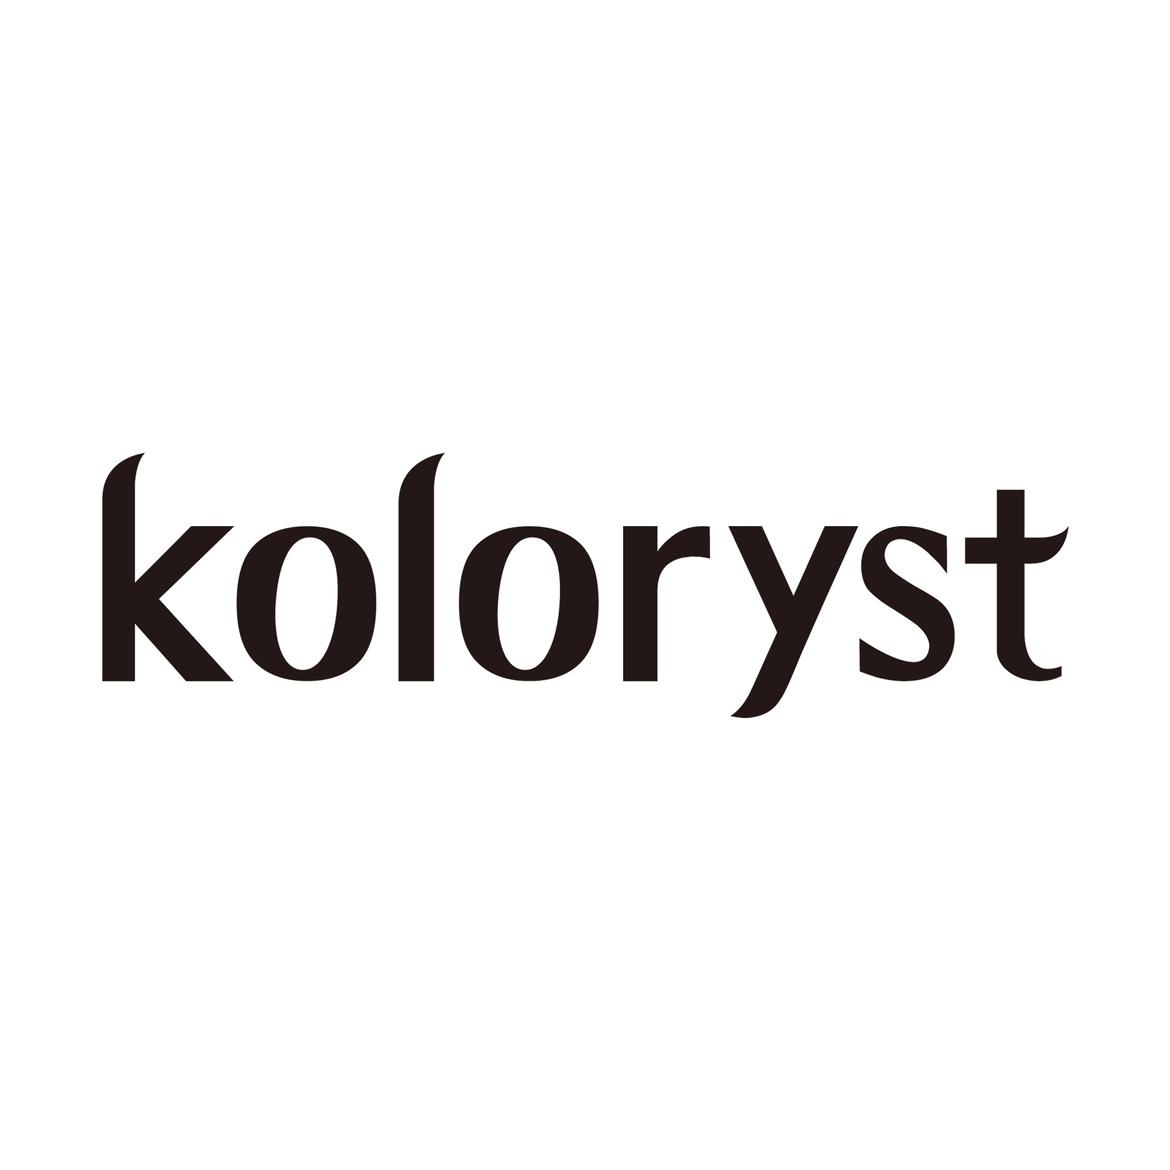 Kolorystus1's images